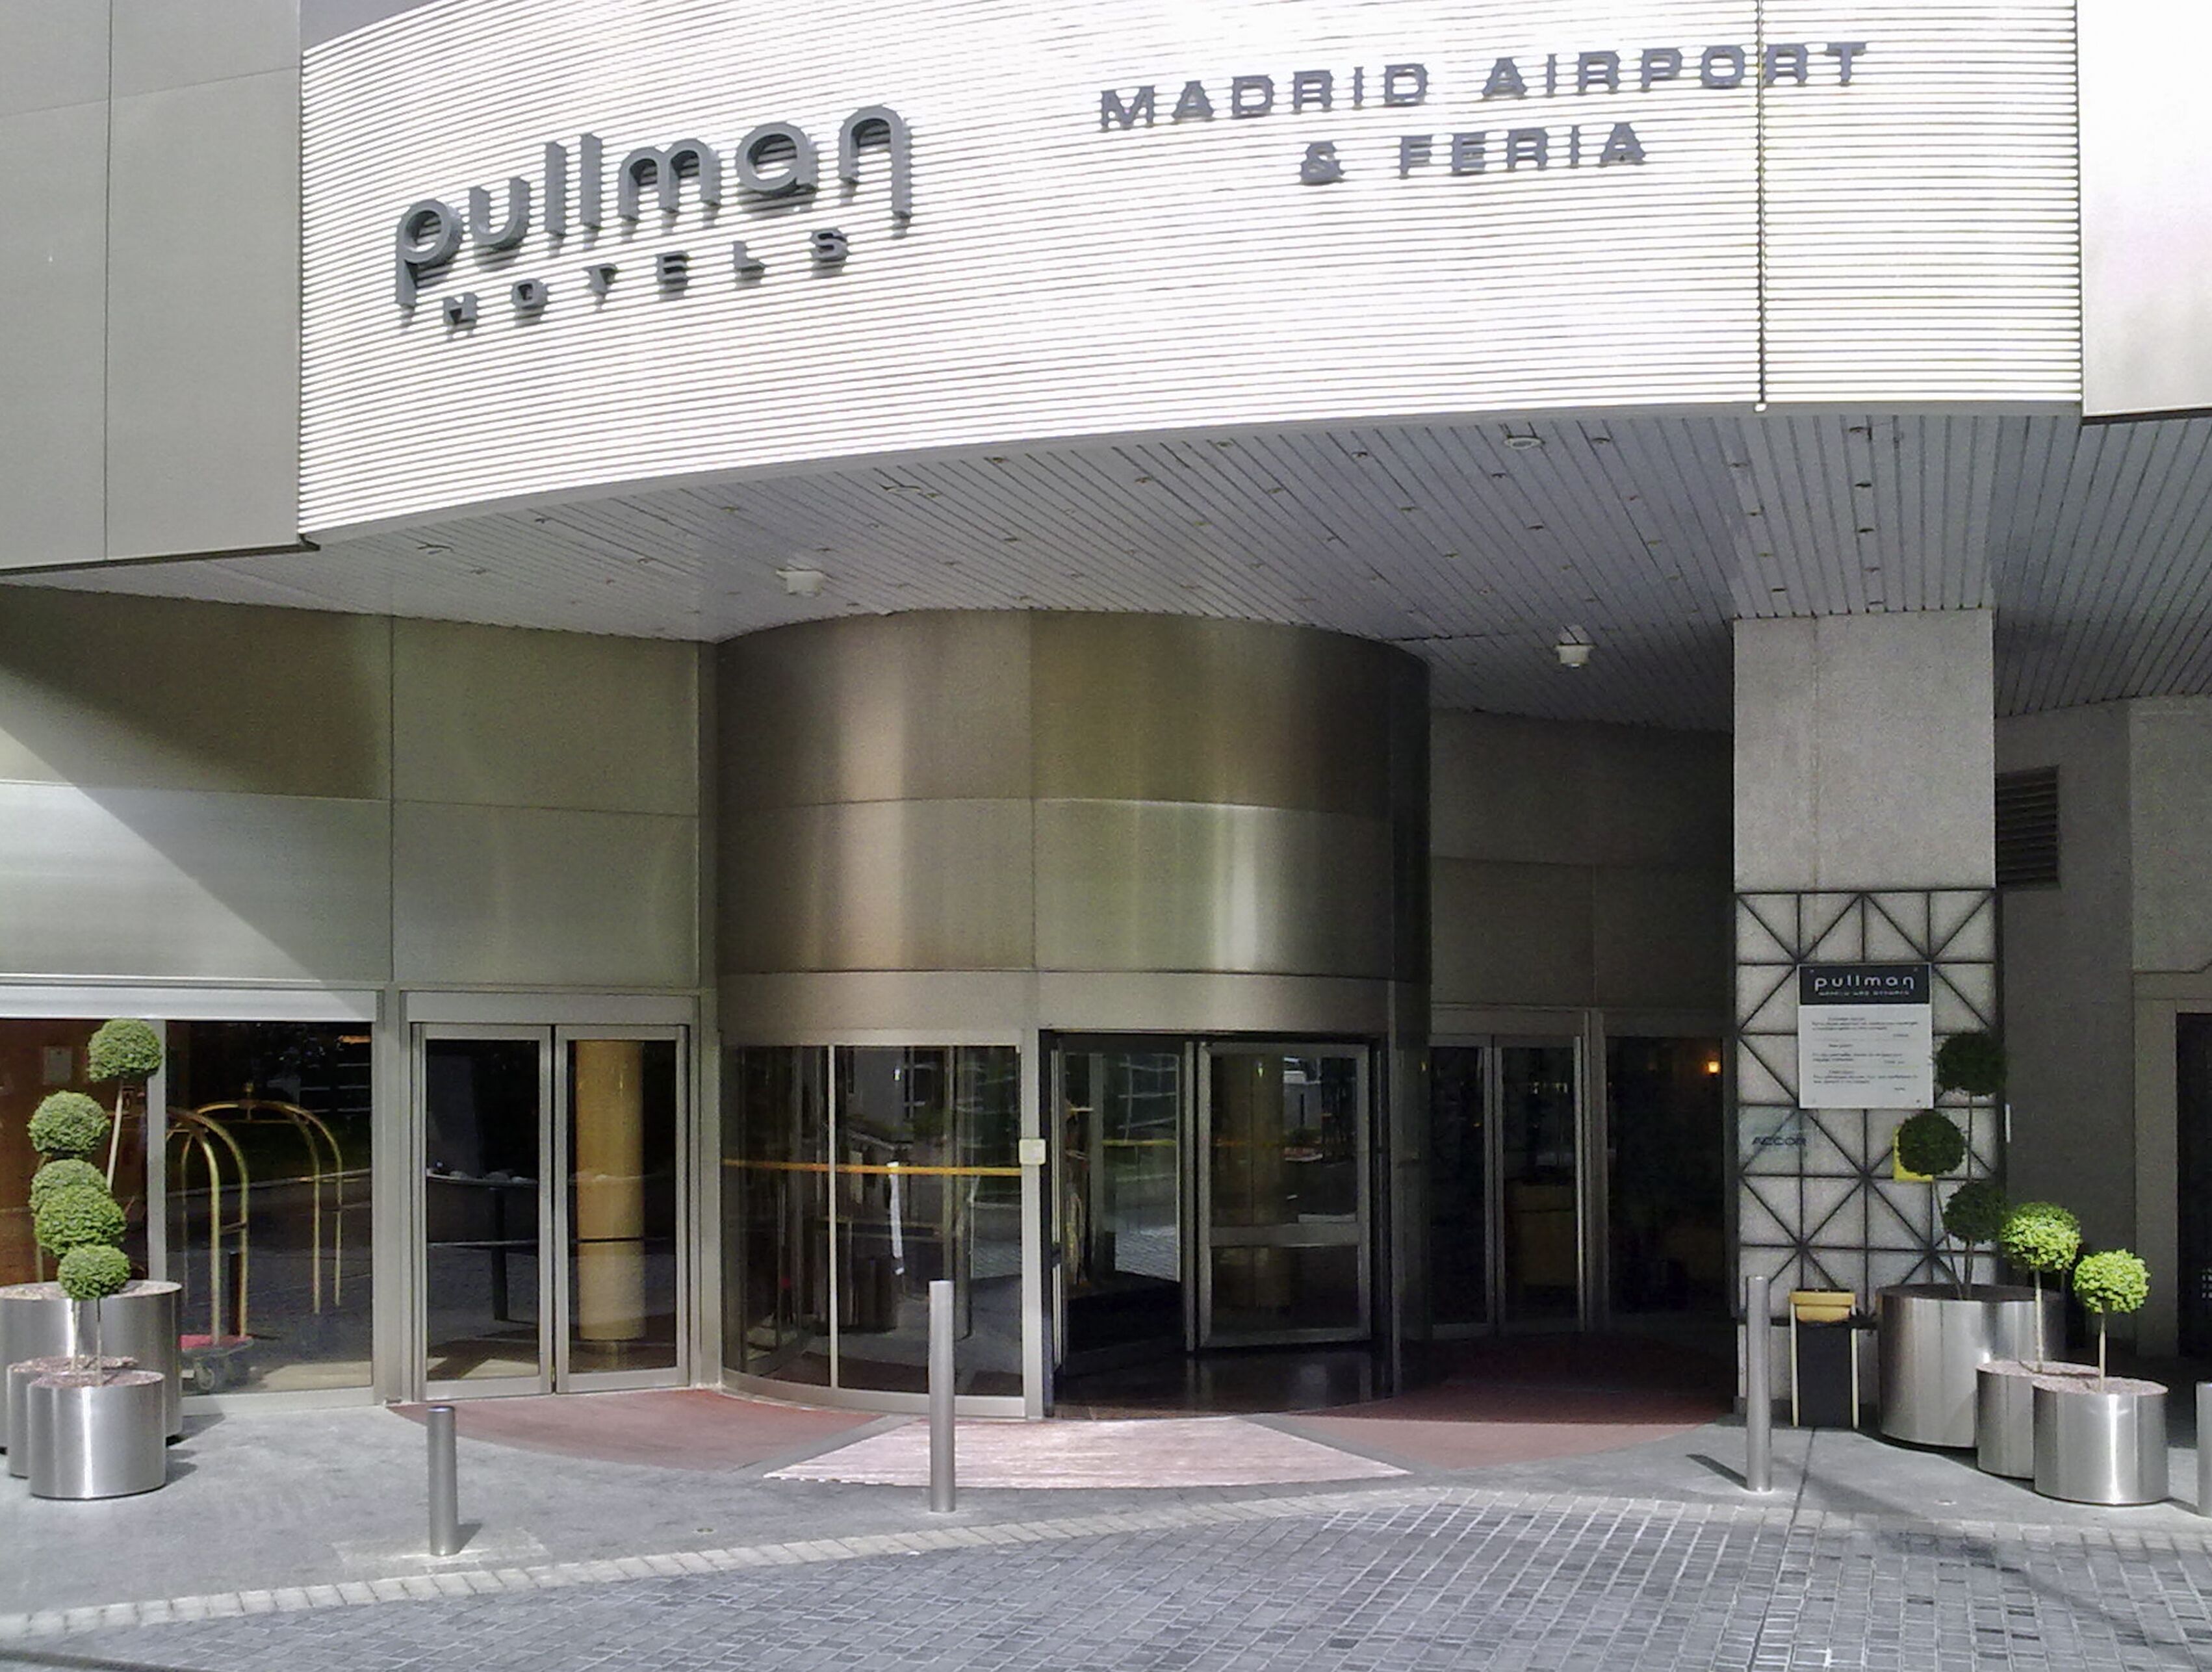 Pullman Madrid Airport & Feria